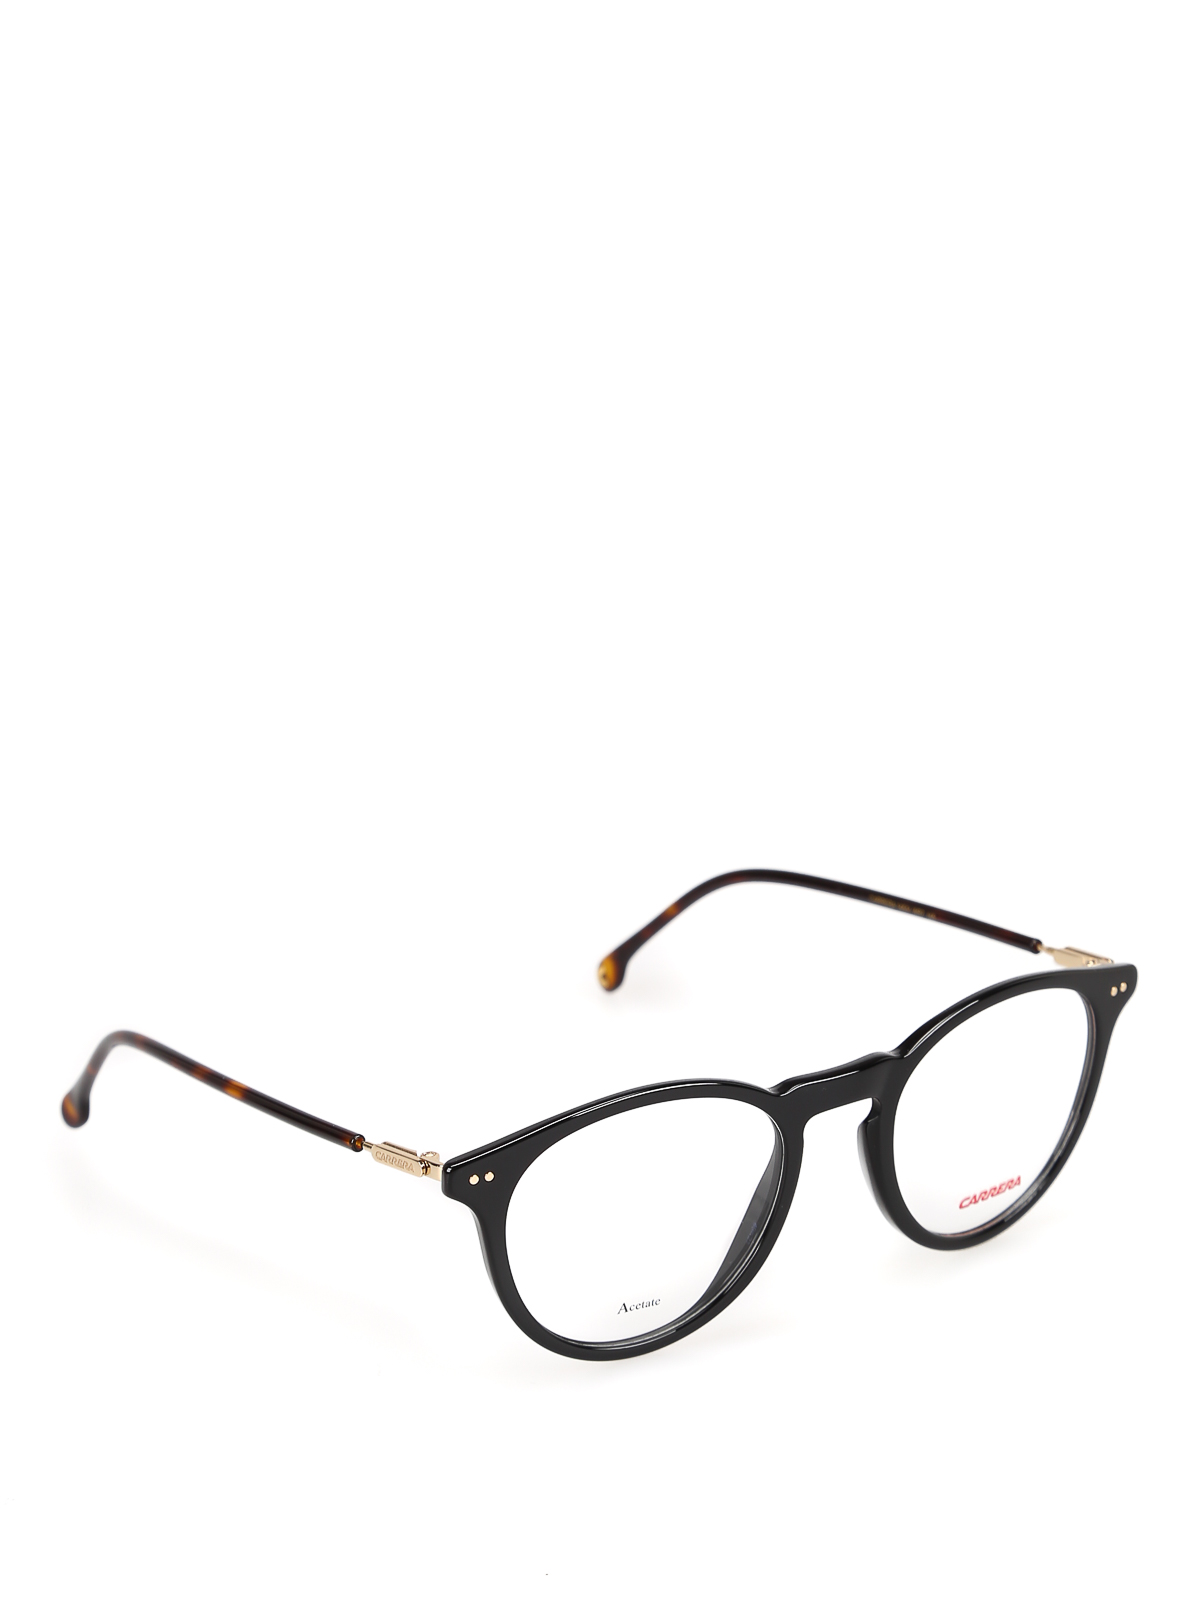 Brillen Carrera - Brillen - Schwarz - CARRERA145VWR721 | iKRIX Shop online